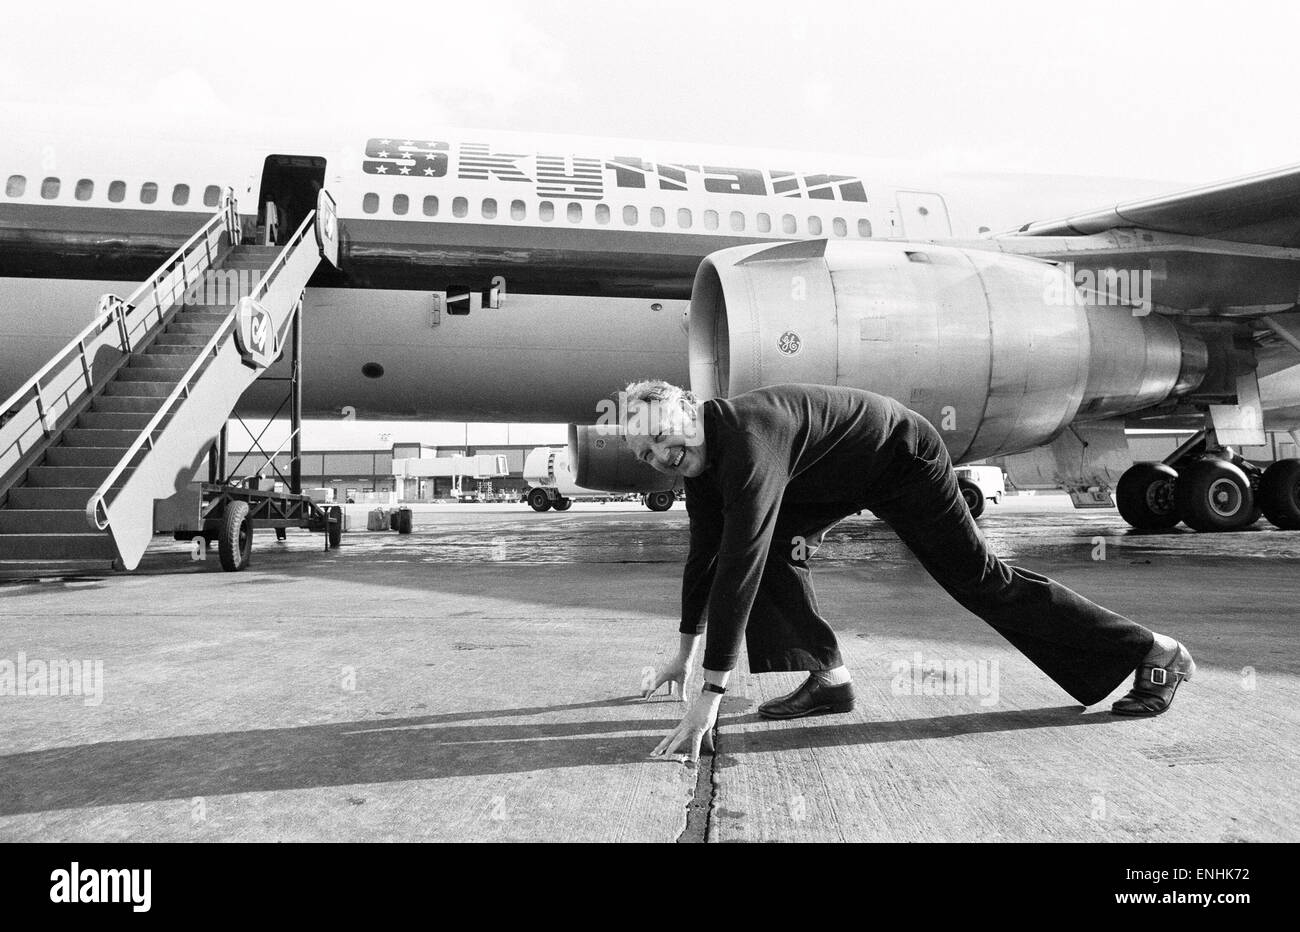 Leiter der Laker Airways Freddie Laker in jubelnder Stimmung auf der Landebahn am Flughafen Gatwick, am Vortag des Erstfluges von seinem transatlantischen Skytrain-Dienst startet vom Flughafen Gatwick nach New York. Der Flug bietet 345 Passagieren Platz und kostet £59 für eine Stockfoto